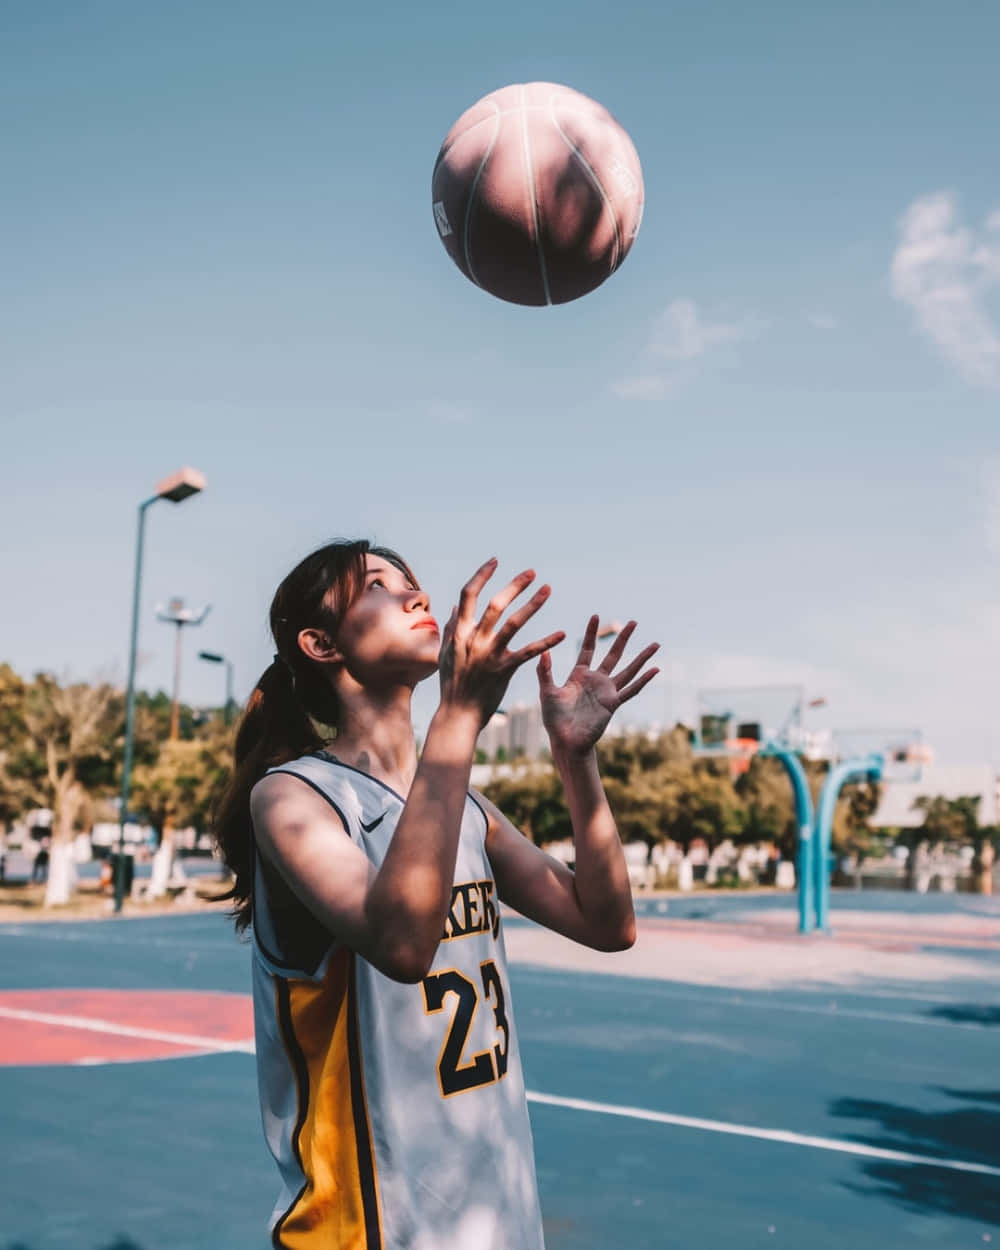 Basketball Girl Catching Ball Outdoor Court.jpg Wallpaper